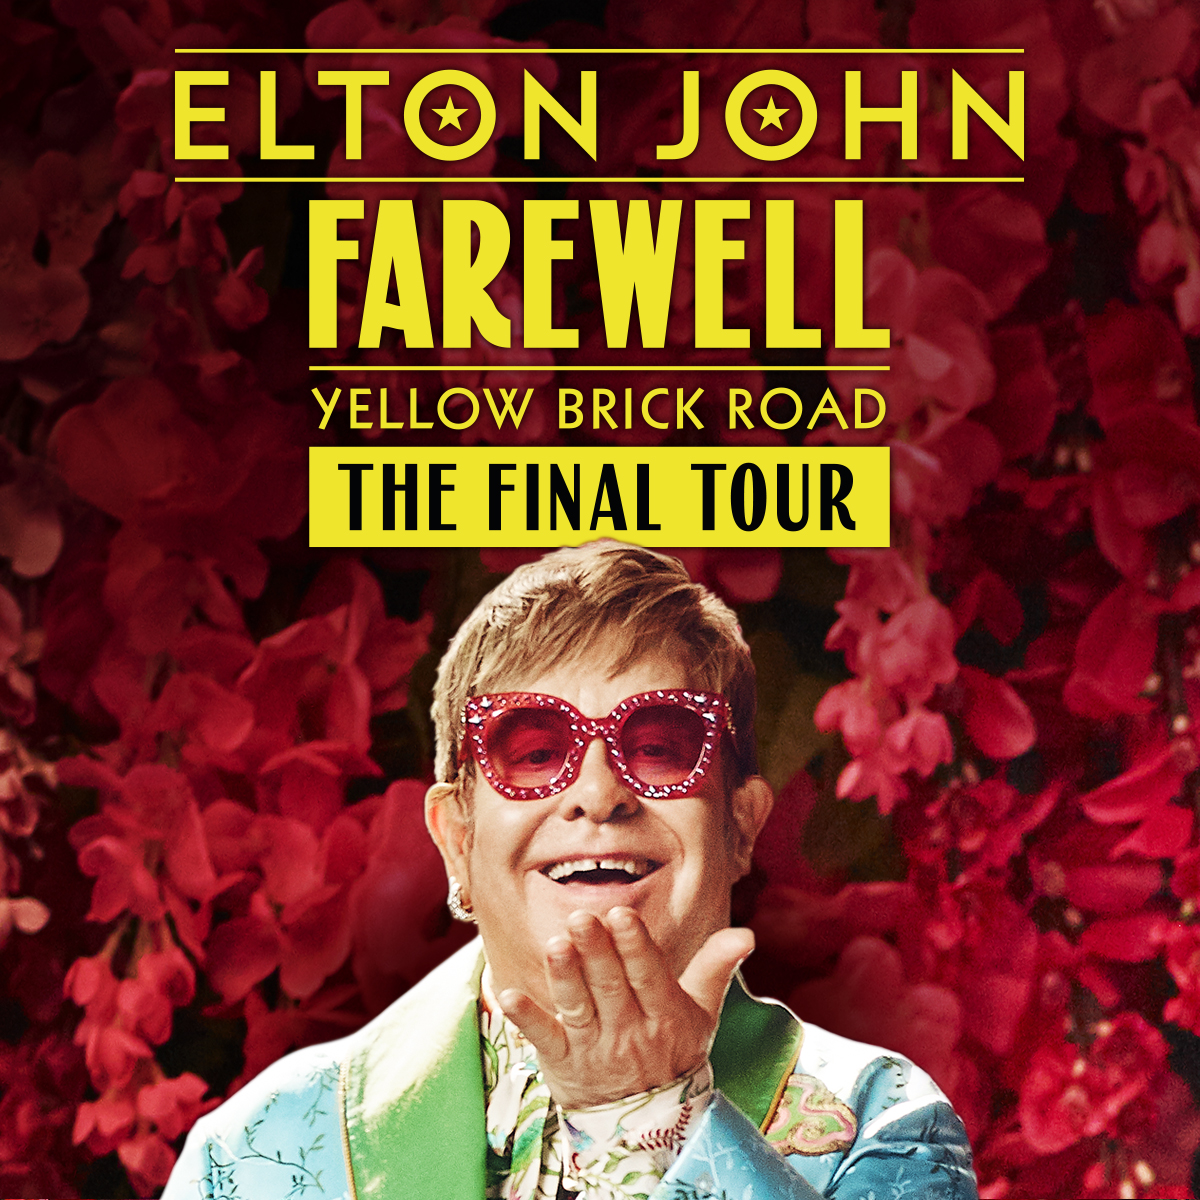 Elton John Farewell Yellow Brick Road Tour poster